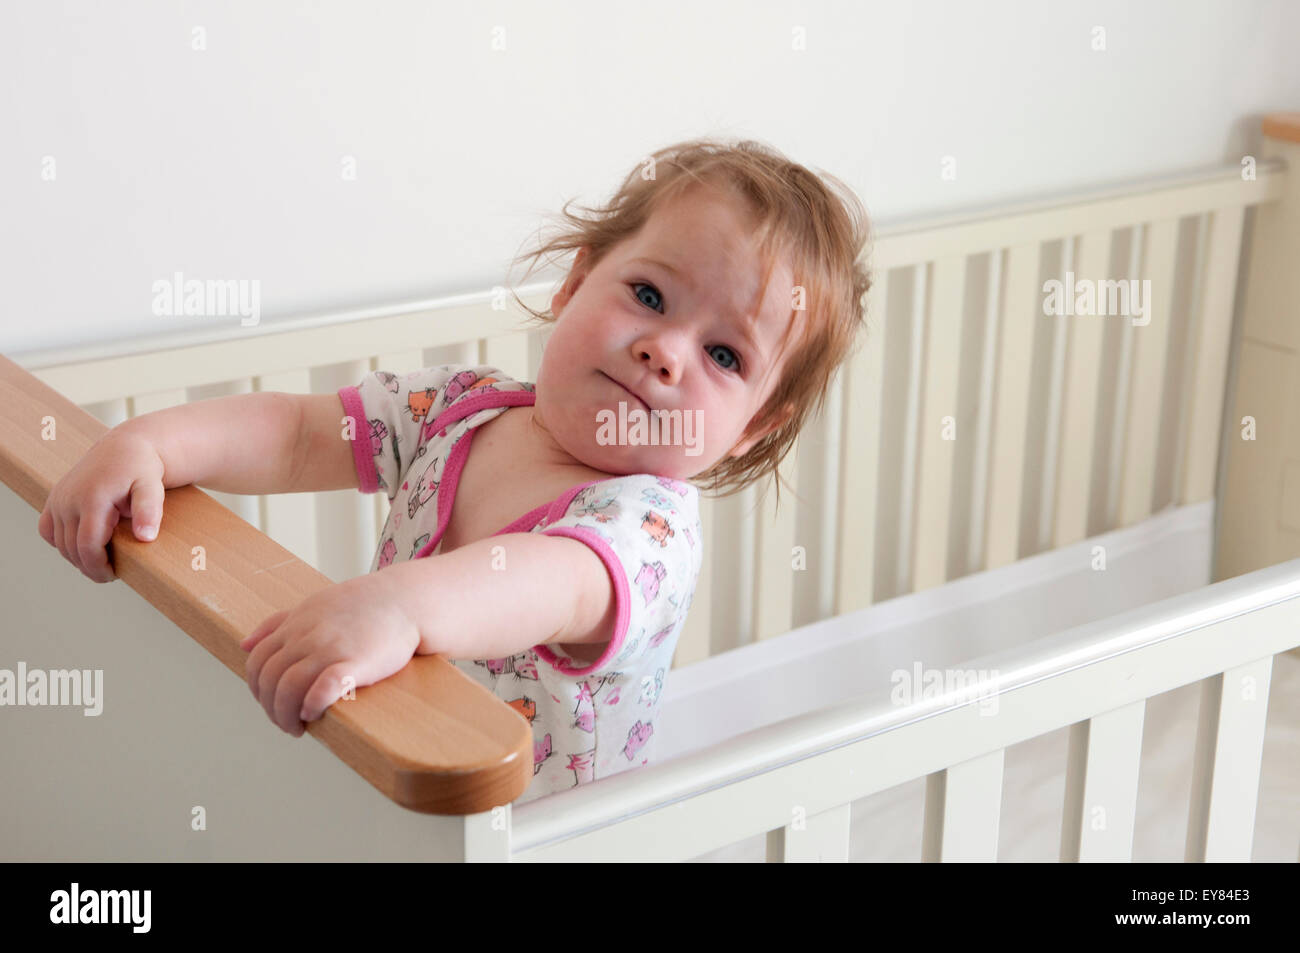 Baby girl standing inside her cot looking mischievous Stock Photo